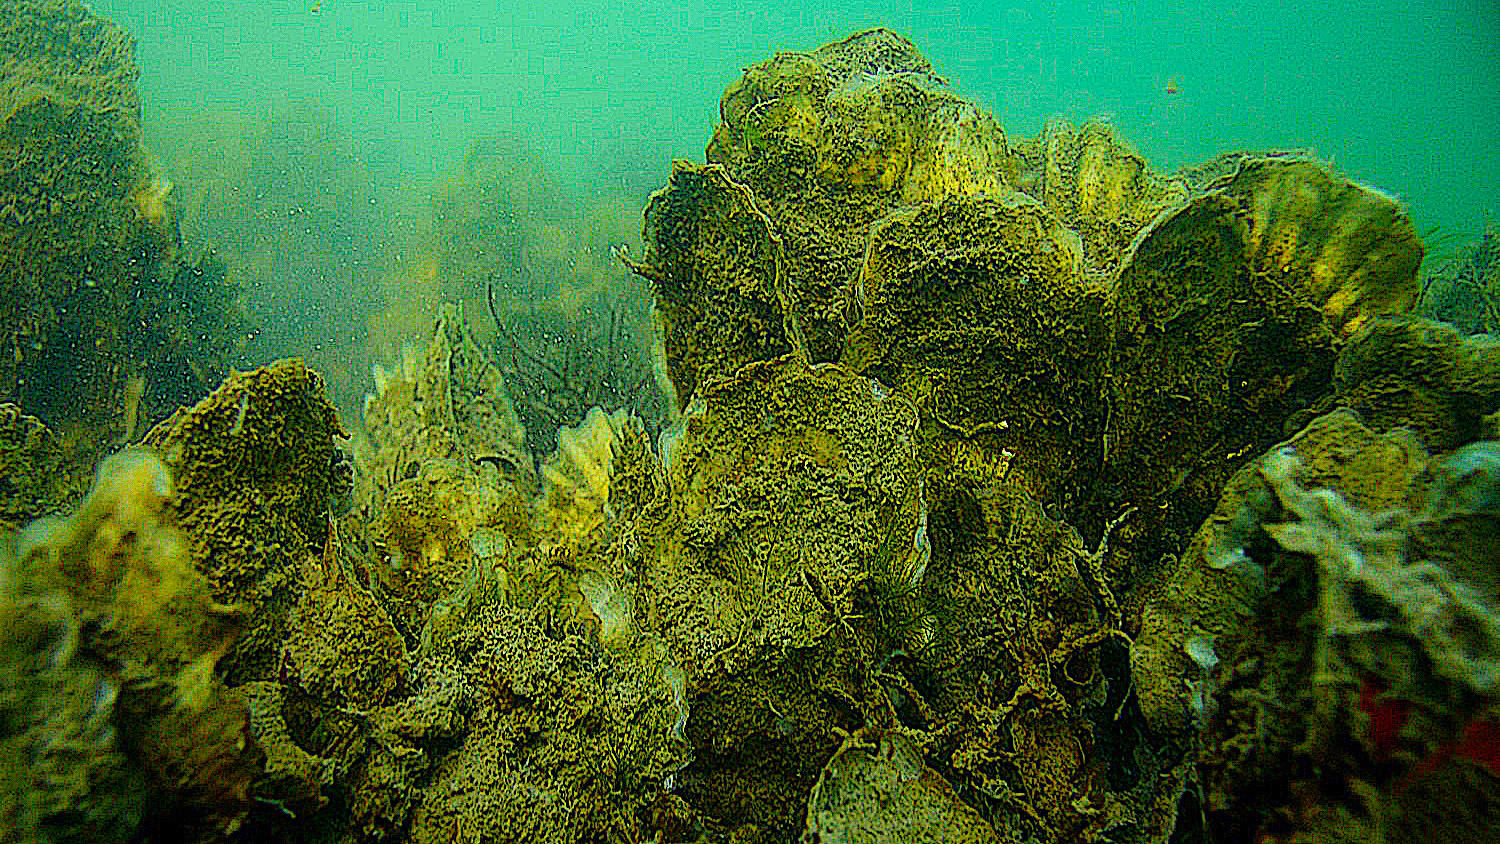 Underwater oyster reef.